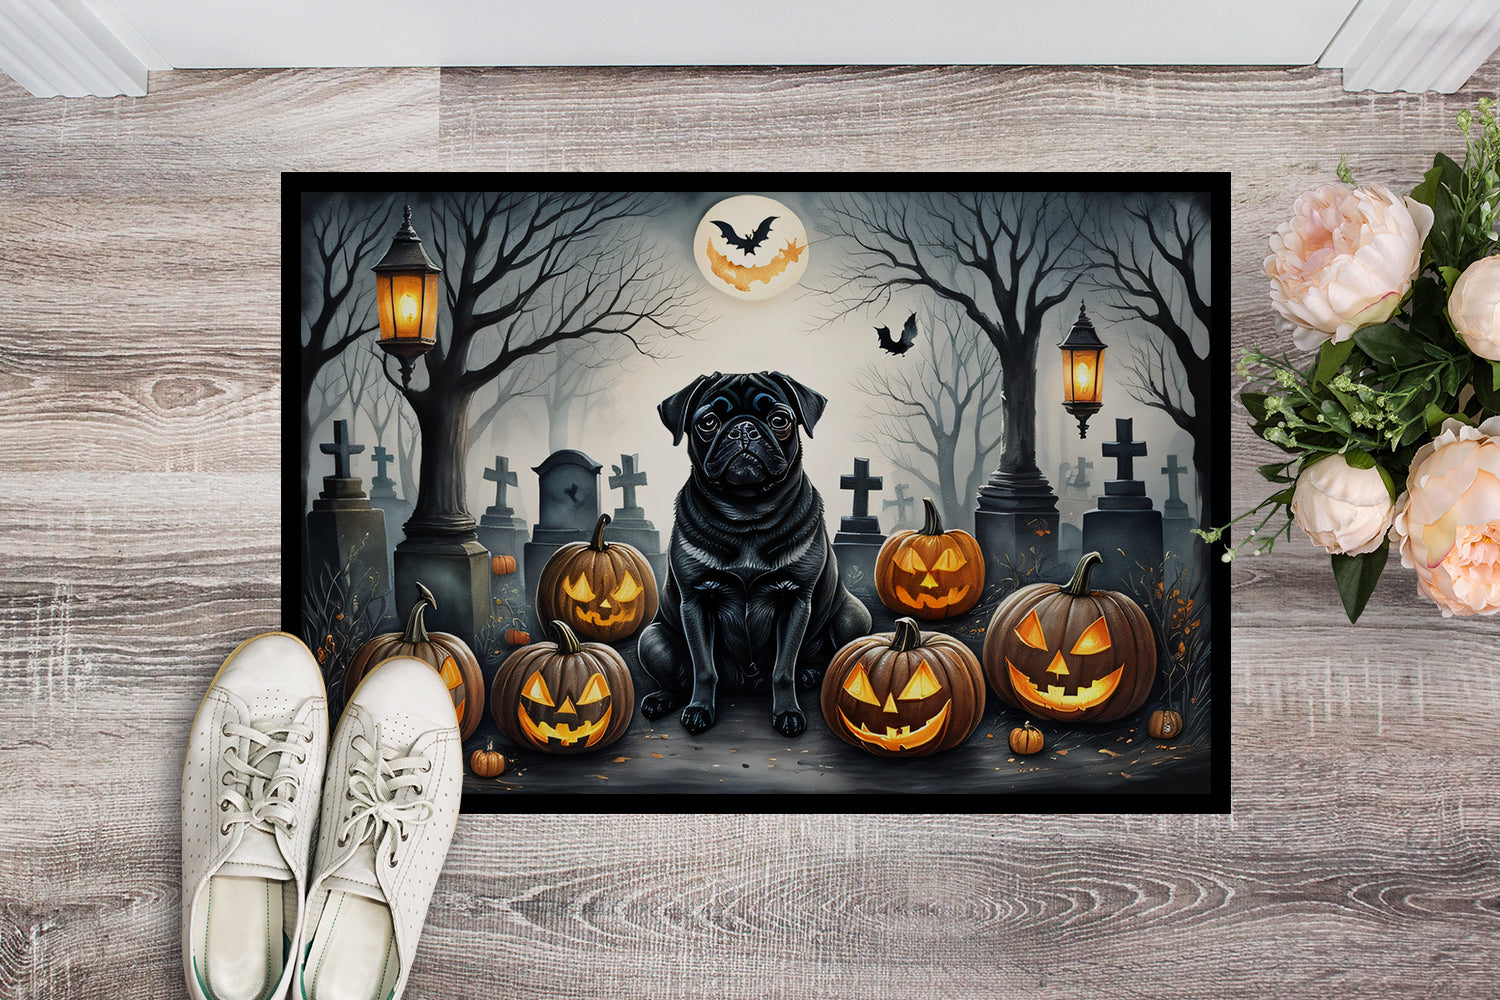 Buy this Black Pug Spooky Halloween Doormat 18x27